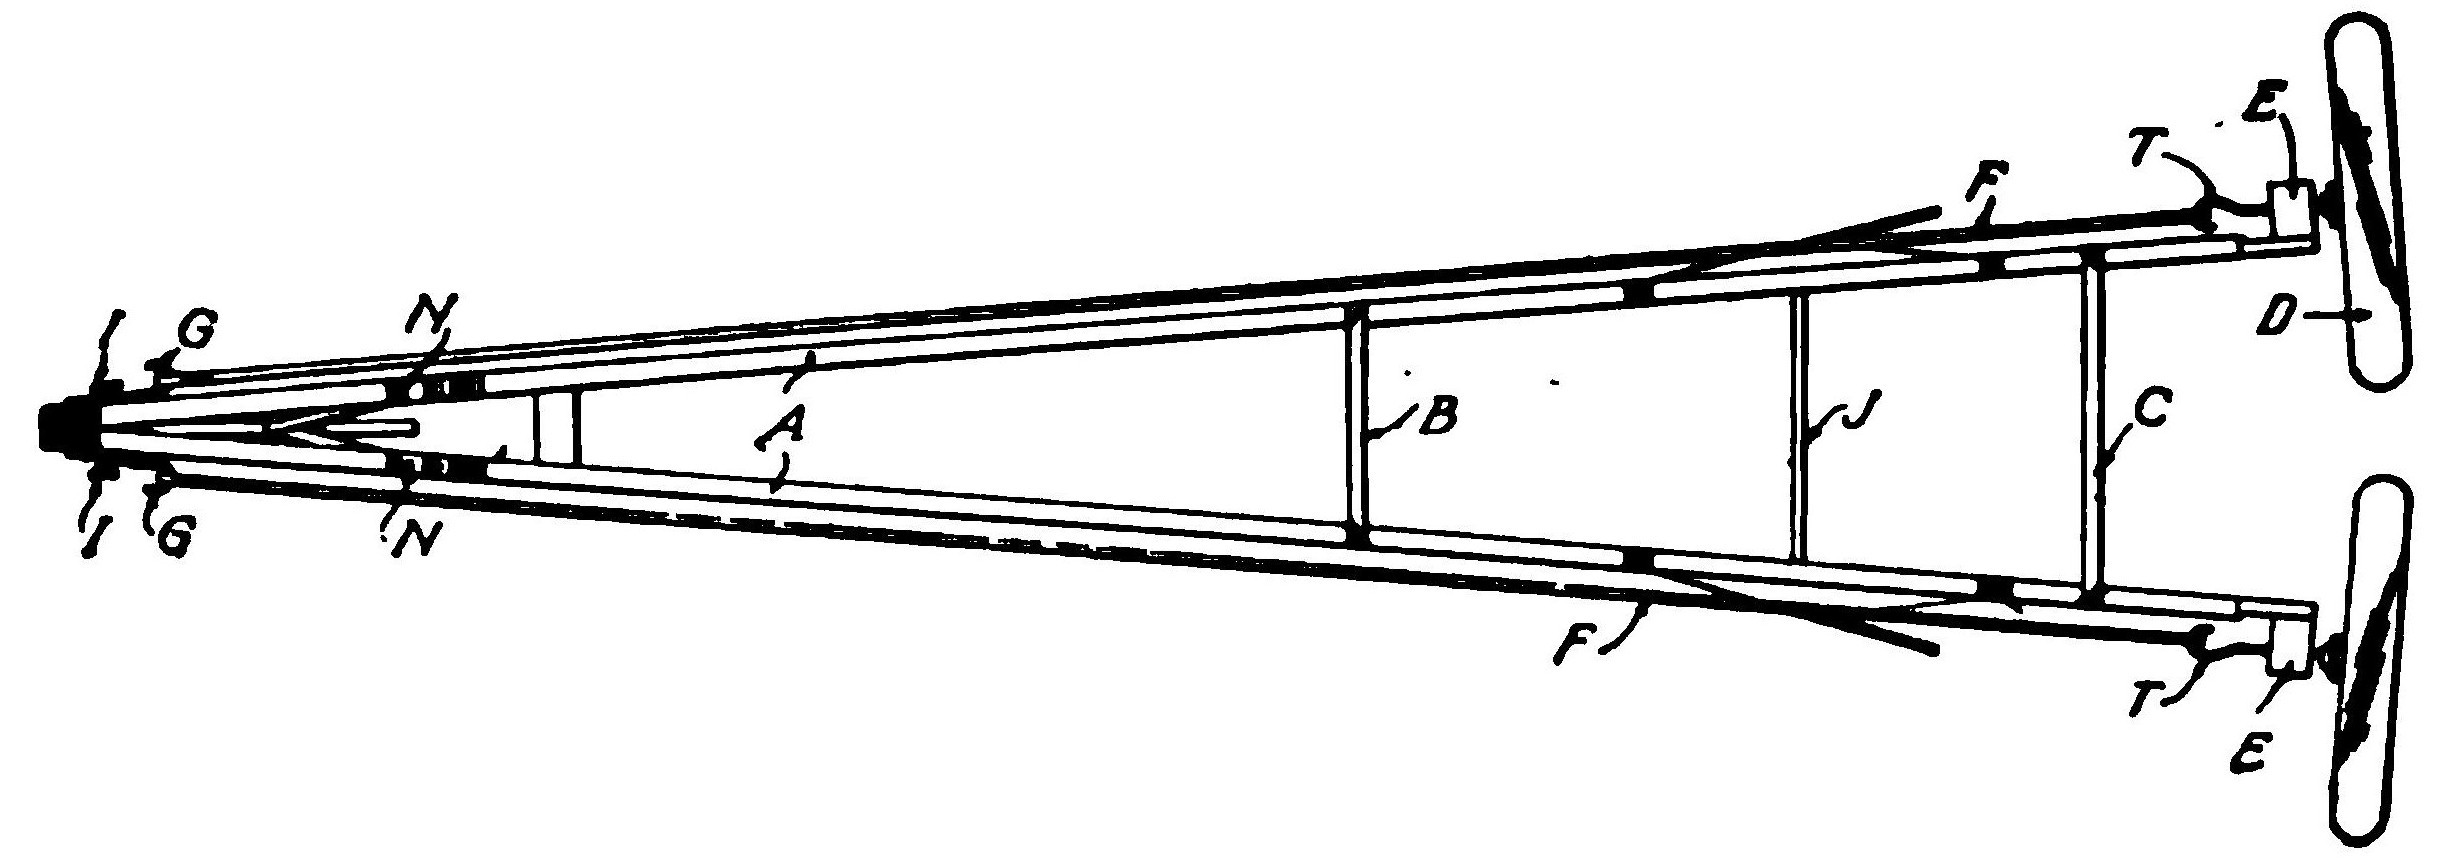 Fig. 4. Details of Rear Skids on Aeroplane Model